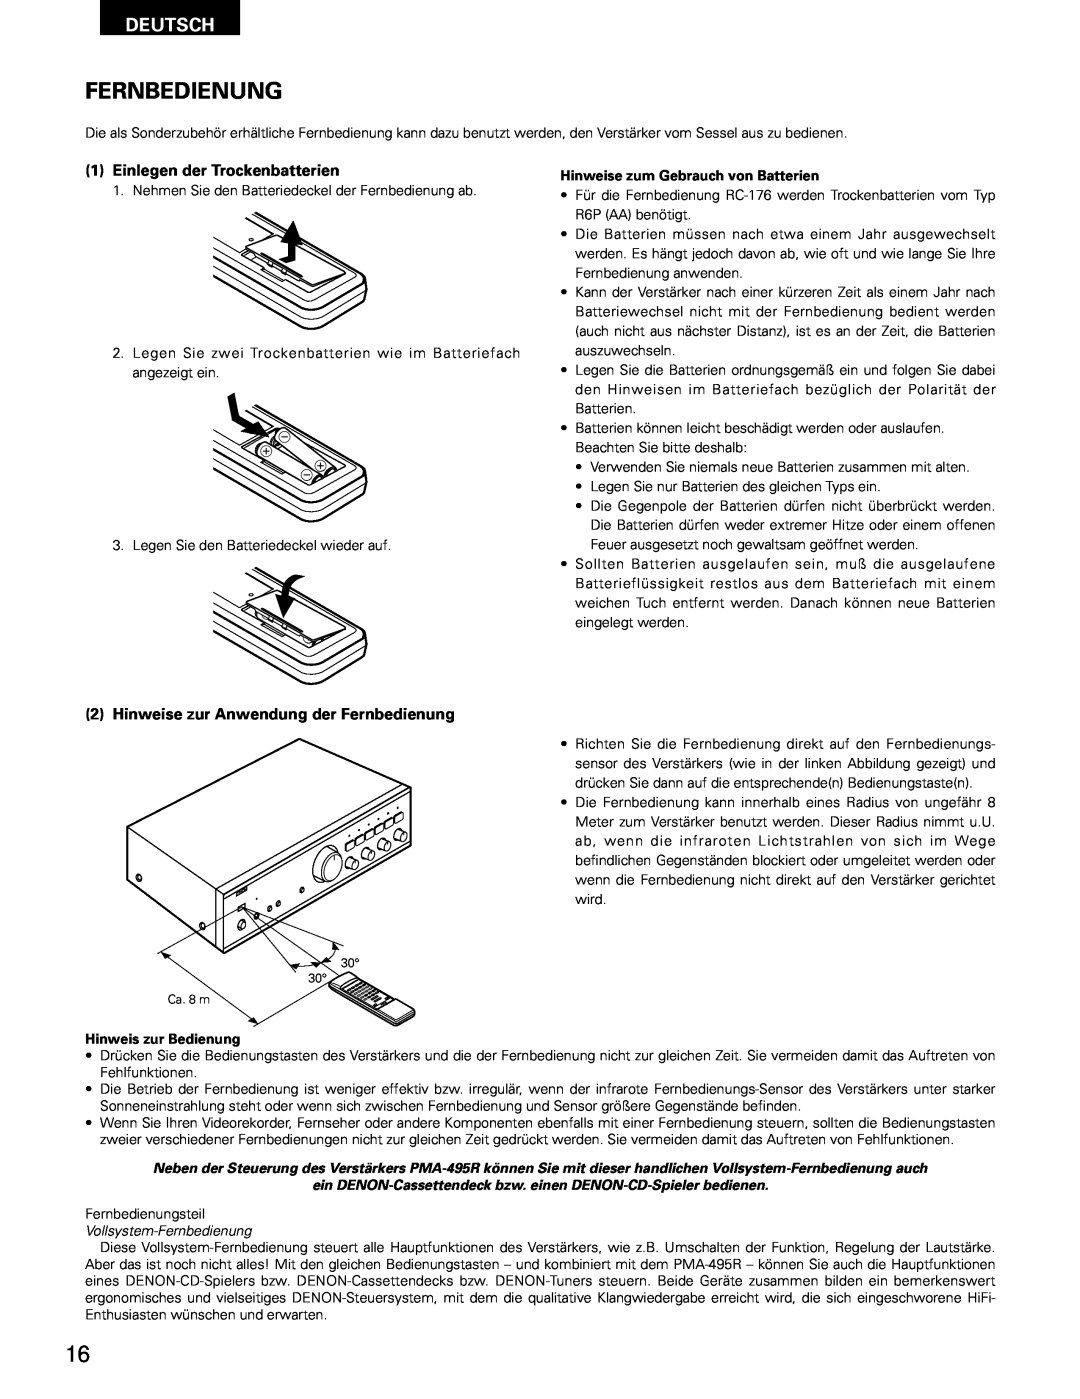 Denon PMA-495R manual Deutsch, Einlegen der Trockenbatterien, Hinweise zur Anwendung der Fernbedienung 